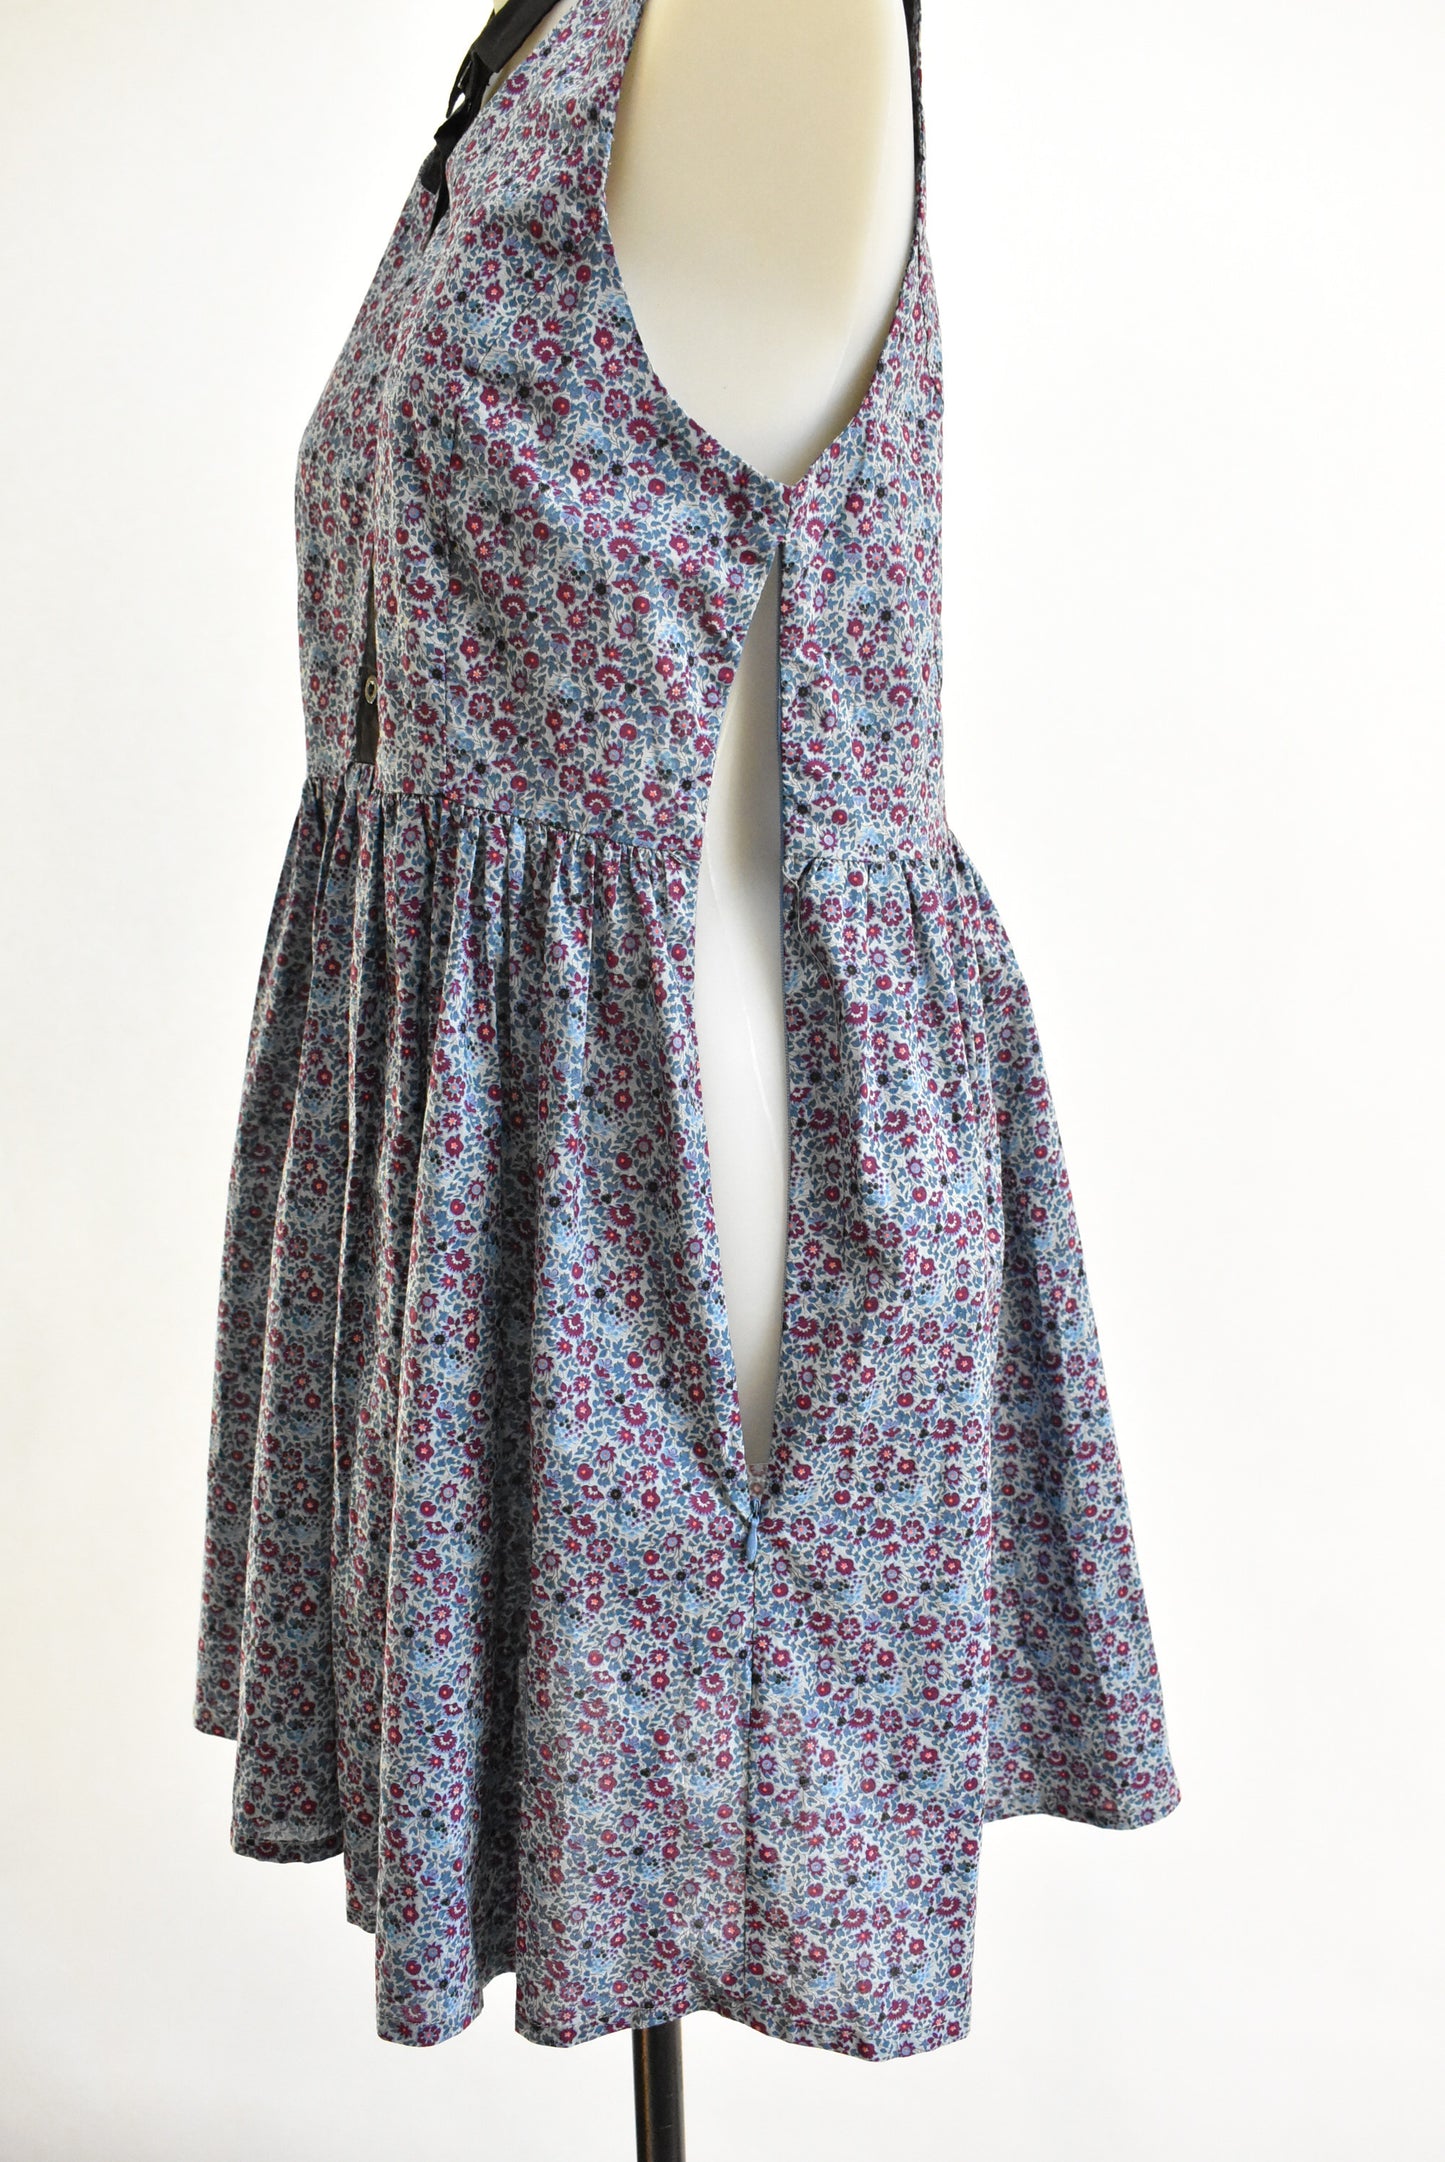 Huffer sleeveless drop collar flower dress, Size 10